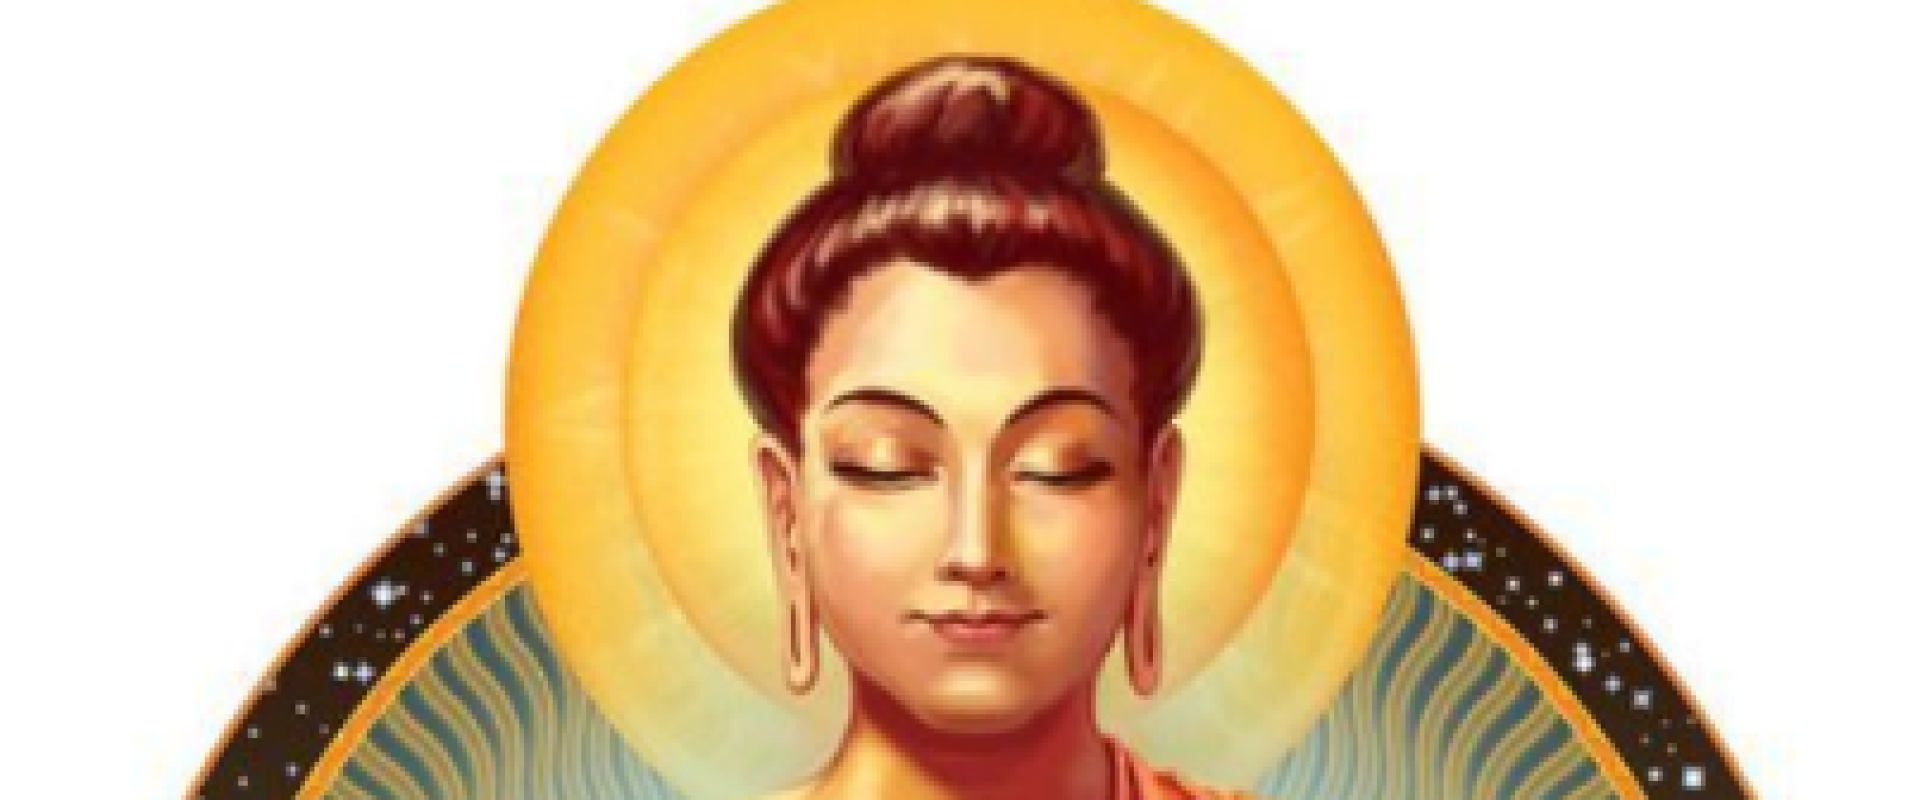 Boeddha zegt: Wees bereid de boodschap te ontvangen